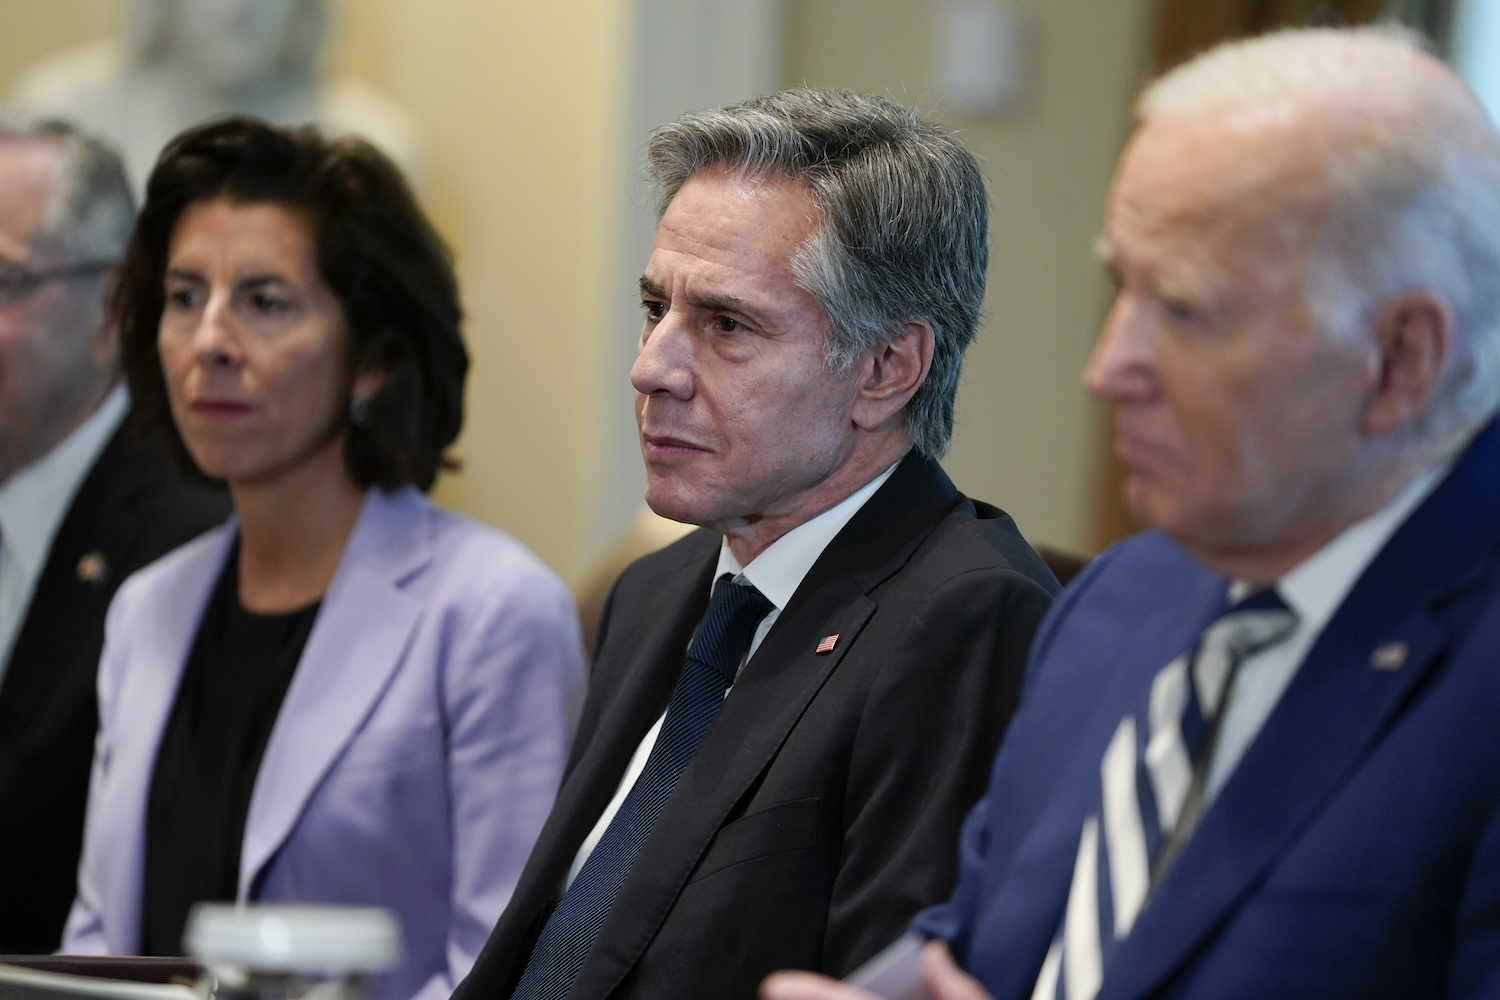 Biden hosts Von der Leyen, Michel, at trilateral meeting at White House 